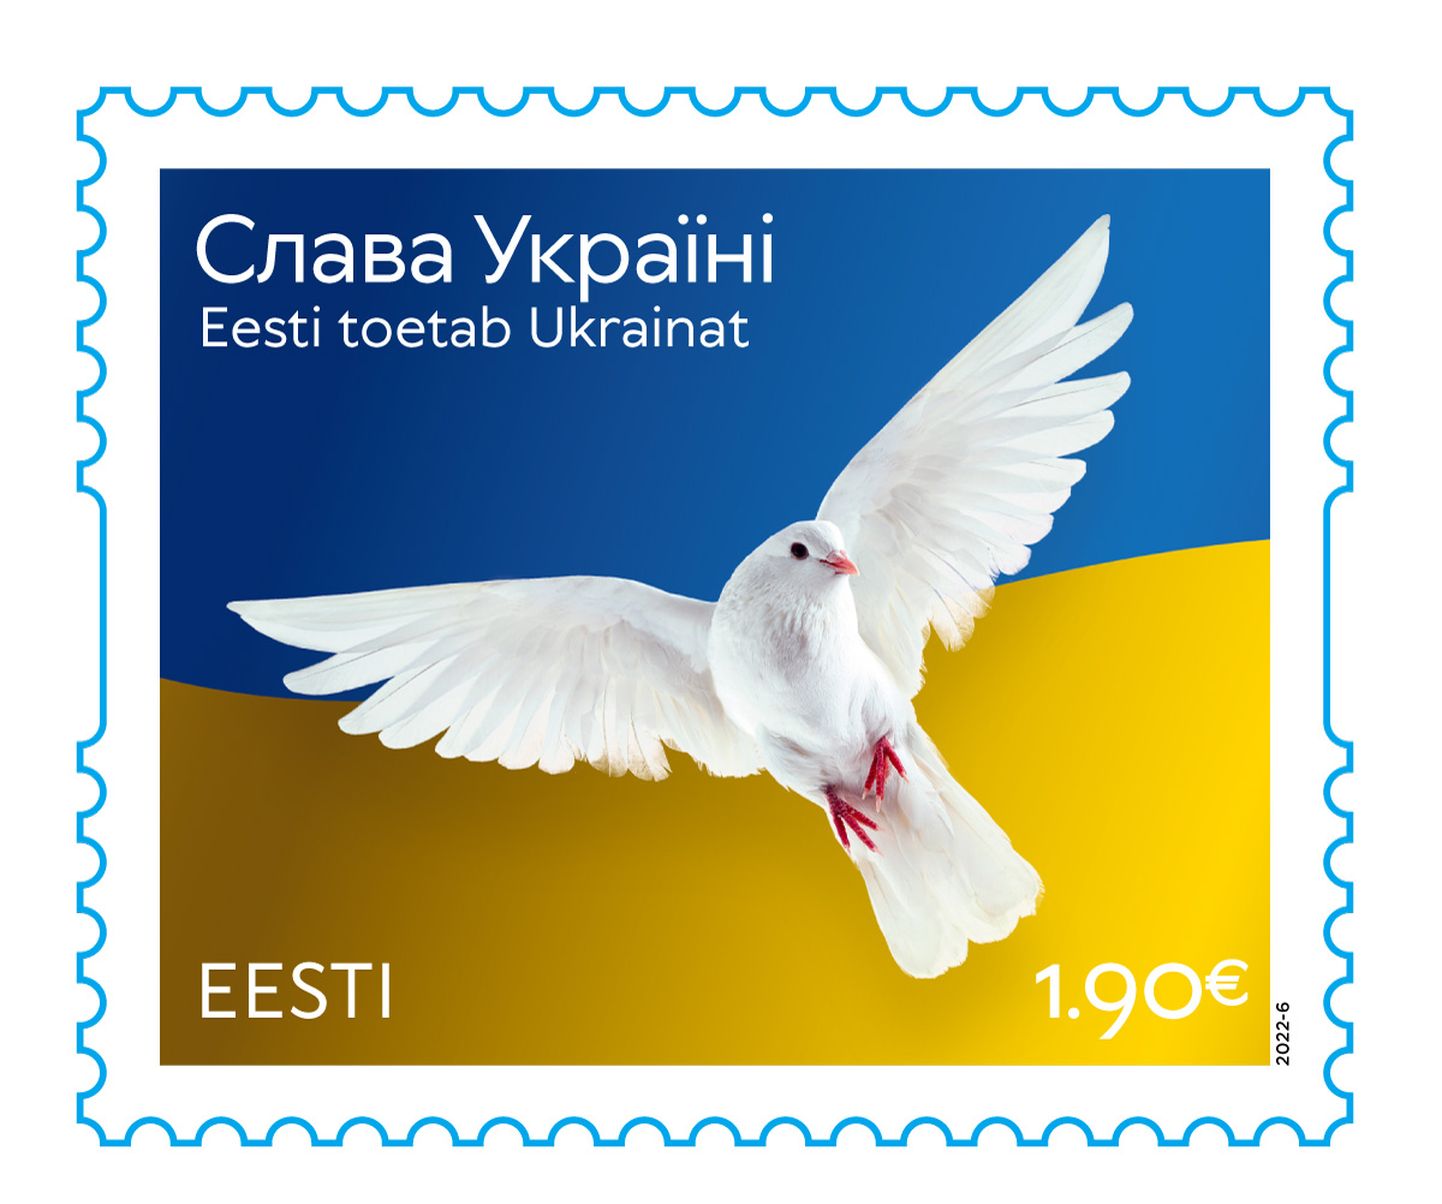 Ukraina toetuseks ilmuv postmark on mõeldud kasutamiseks üle maailma.